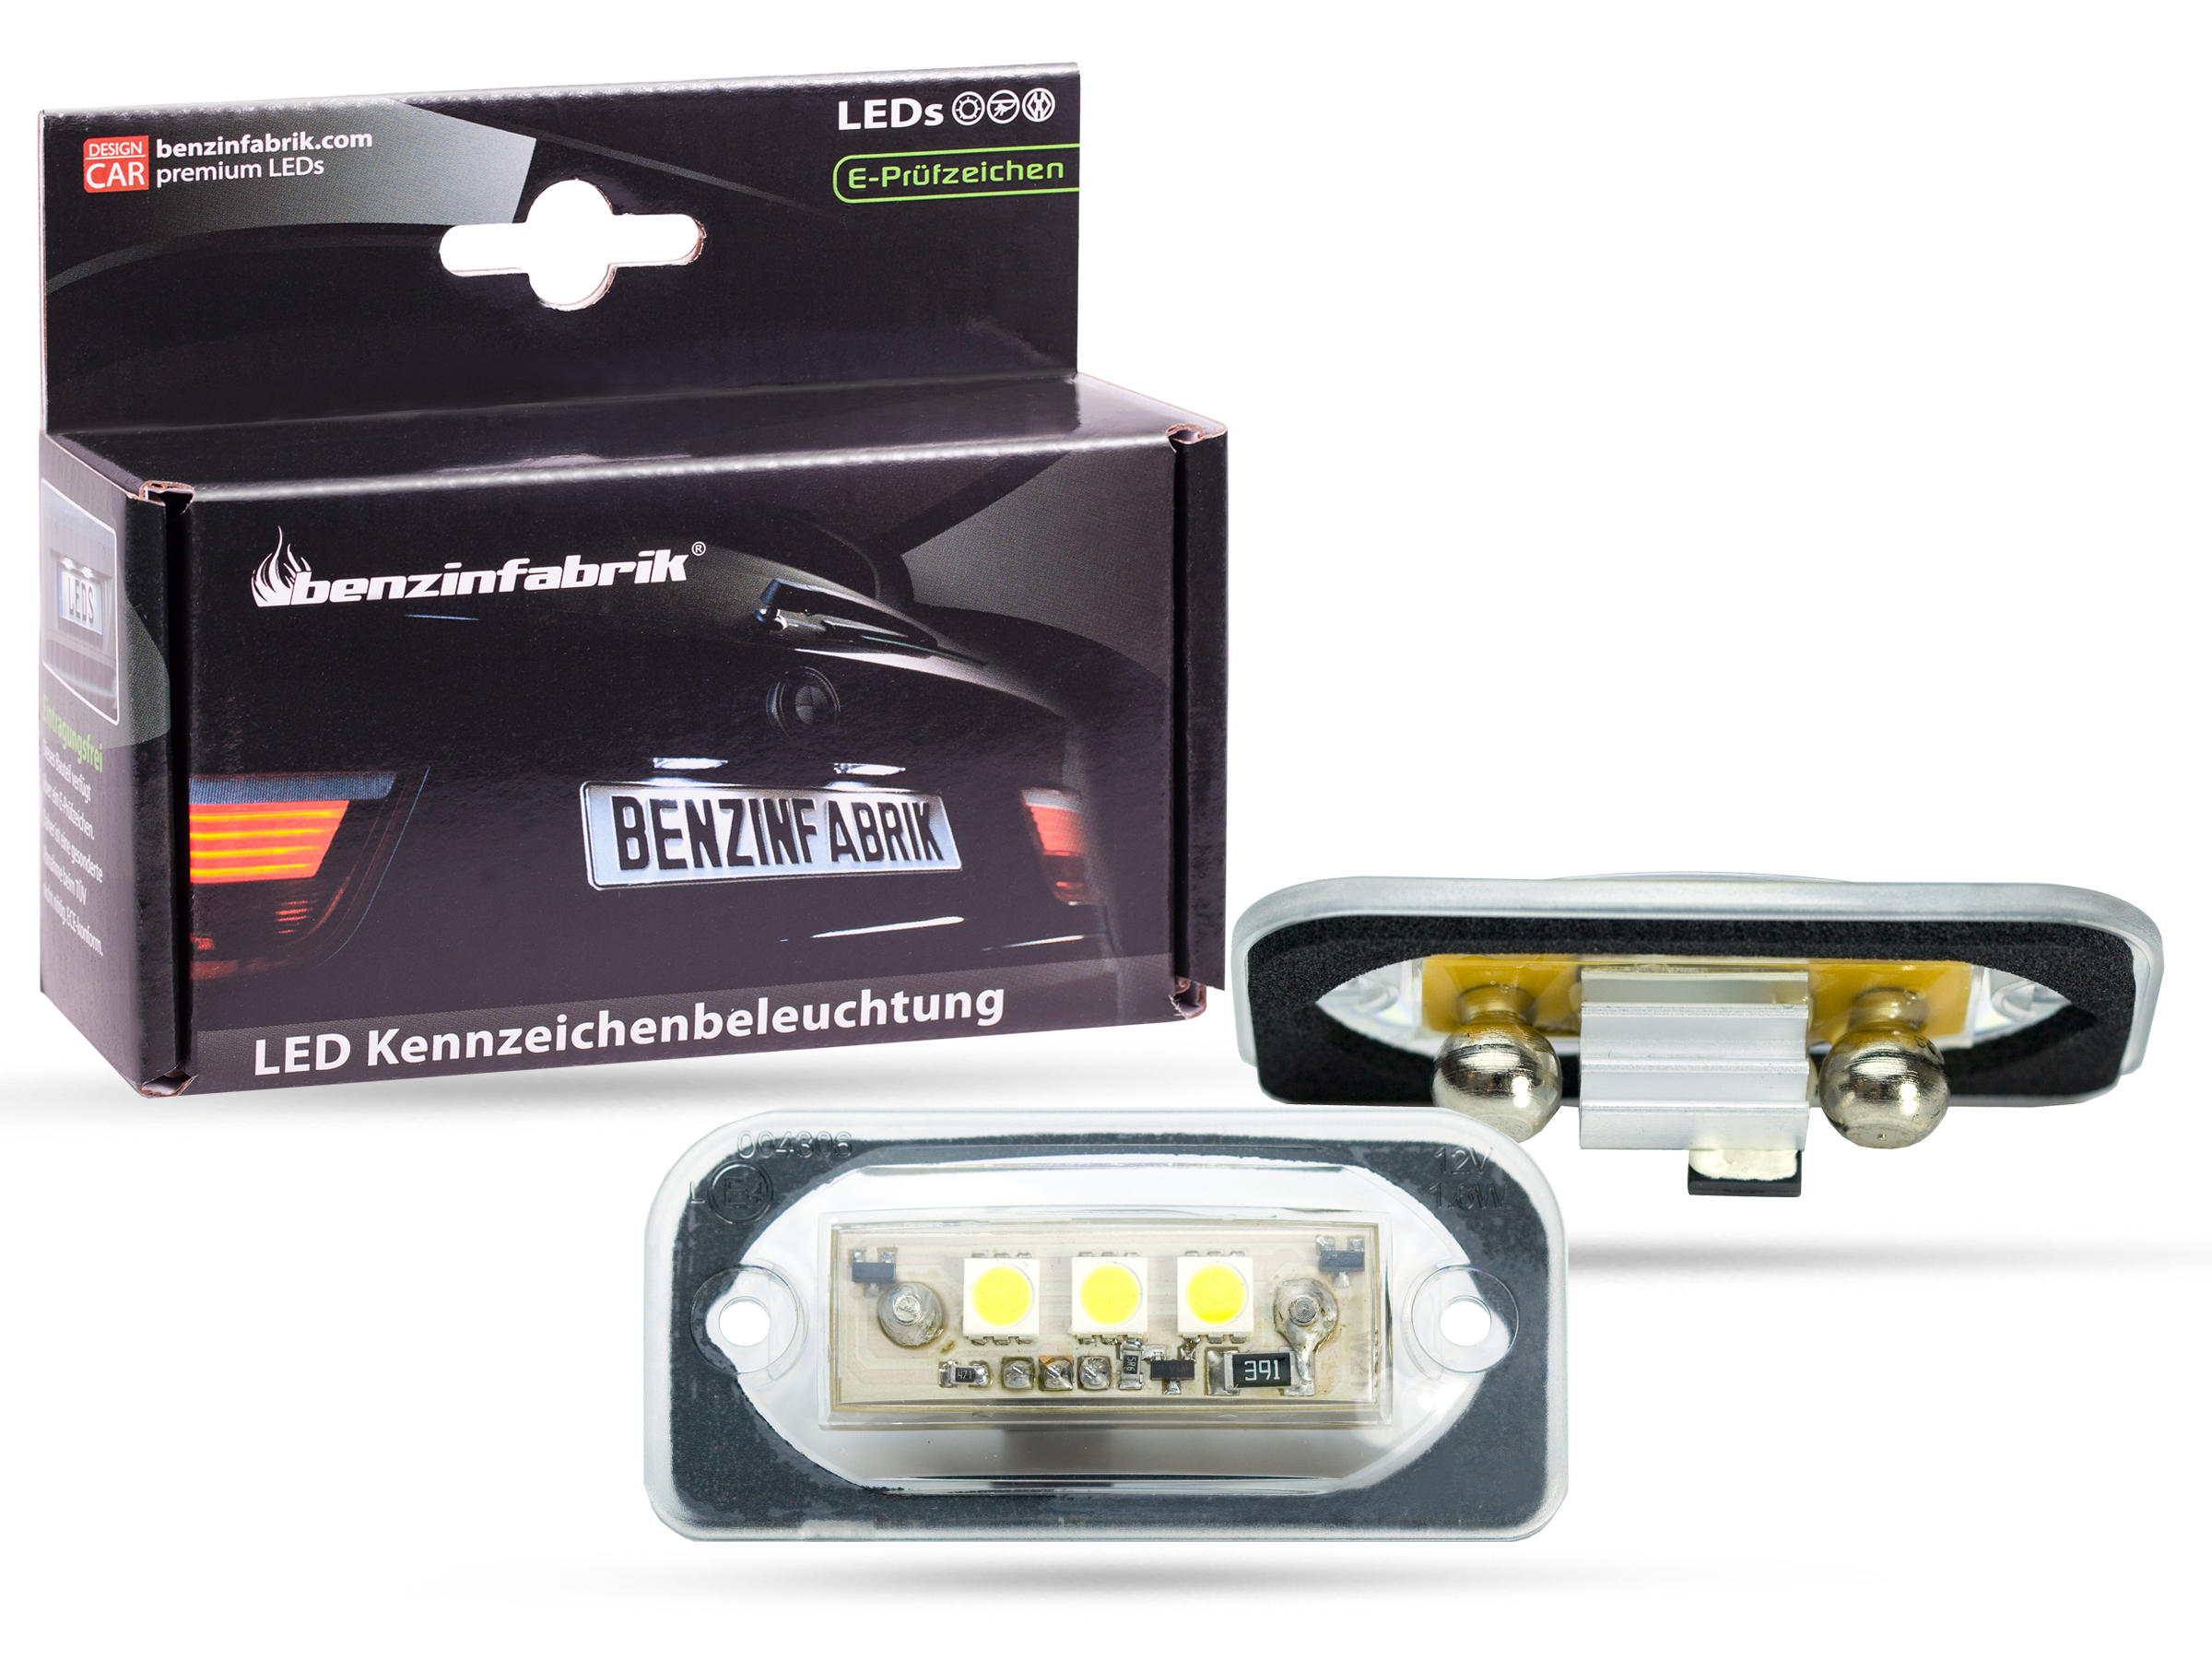 LED Kennzeichenbeleuchtung Module Mercedes CLK W209, mit E-Prüfzeichen, LED  Kennzeichenbeleuchtung für Mercedes, LED Kennzeichenbeleuchtung